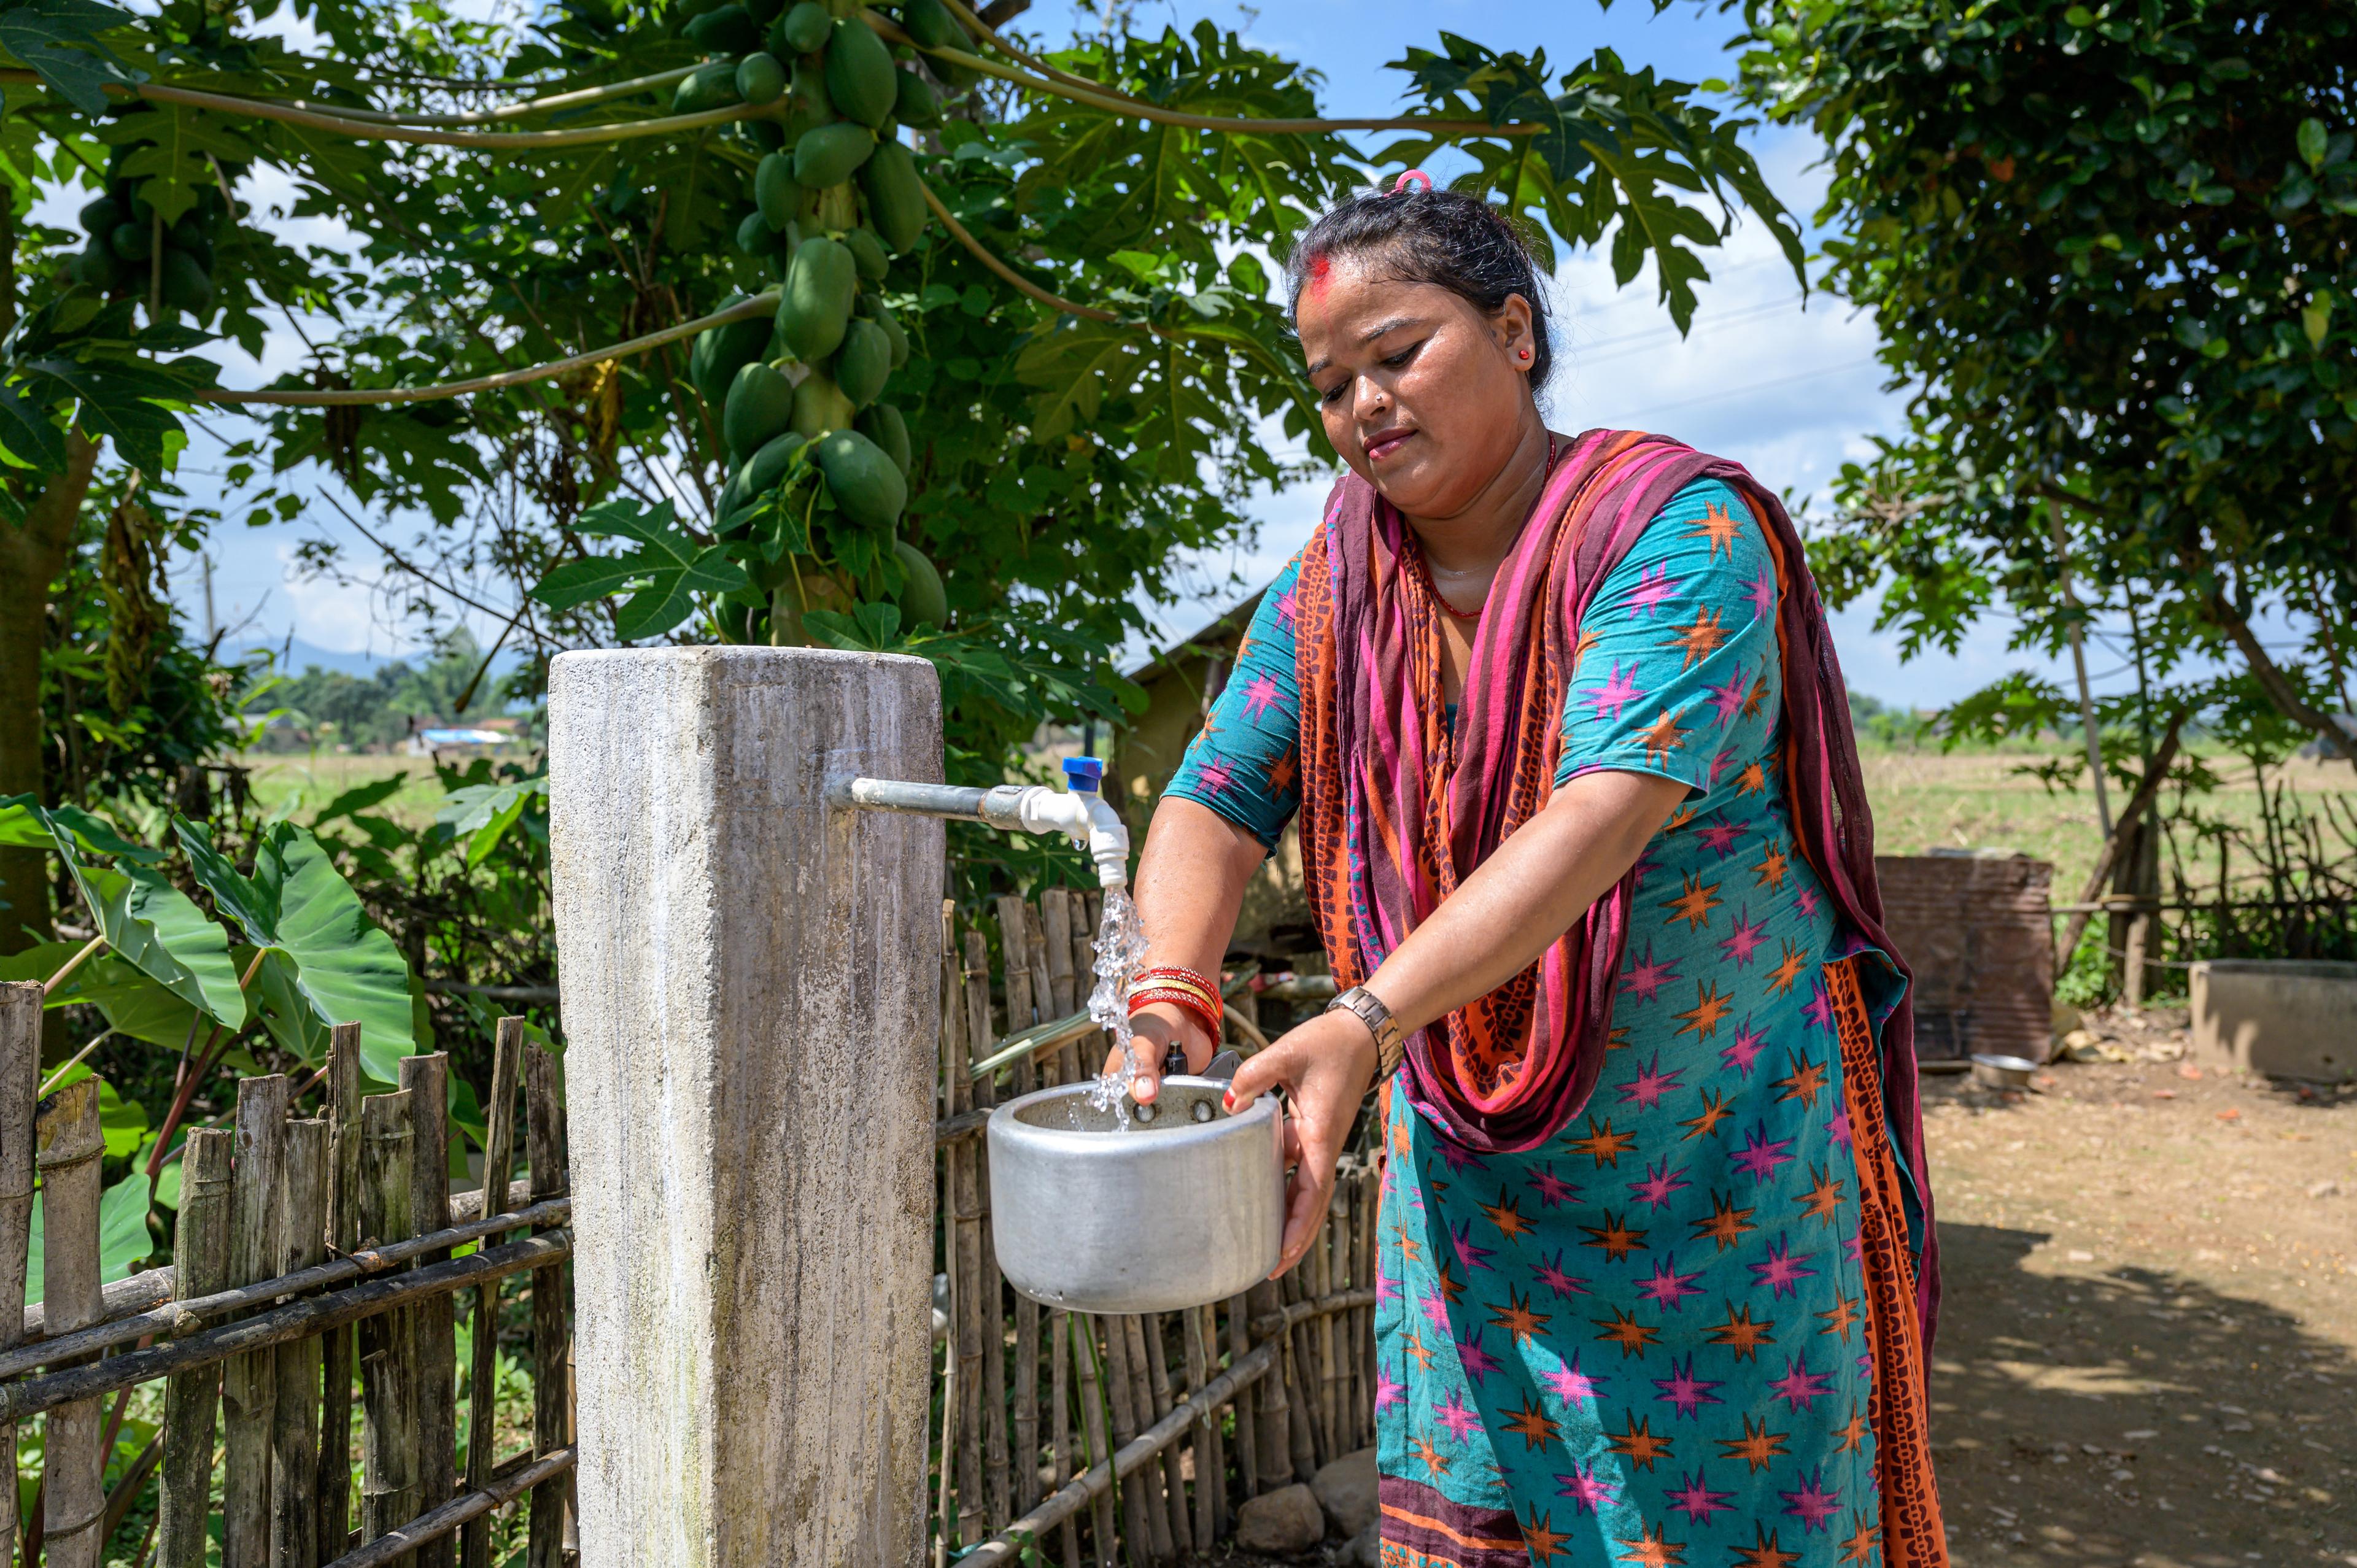 Una donna vestita in modo colorato usa un rubinetto, in un giardino, all'aperto. Sta riempiendo un contenitore, probabilmente un recipiente per l'acqua. Sullo sfondo un giardino verde.